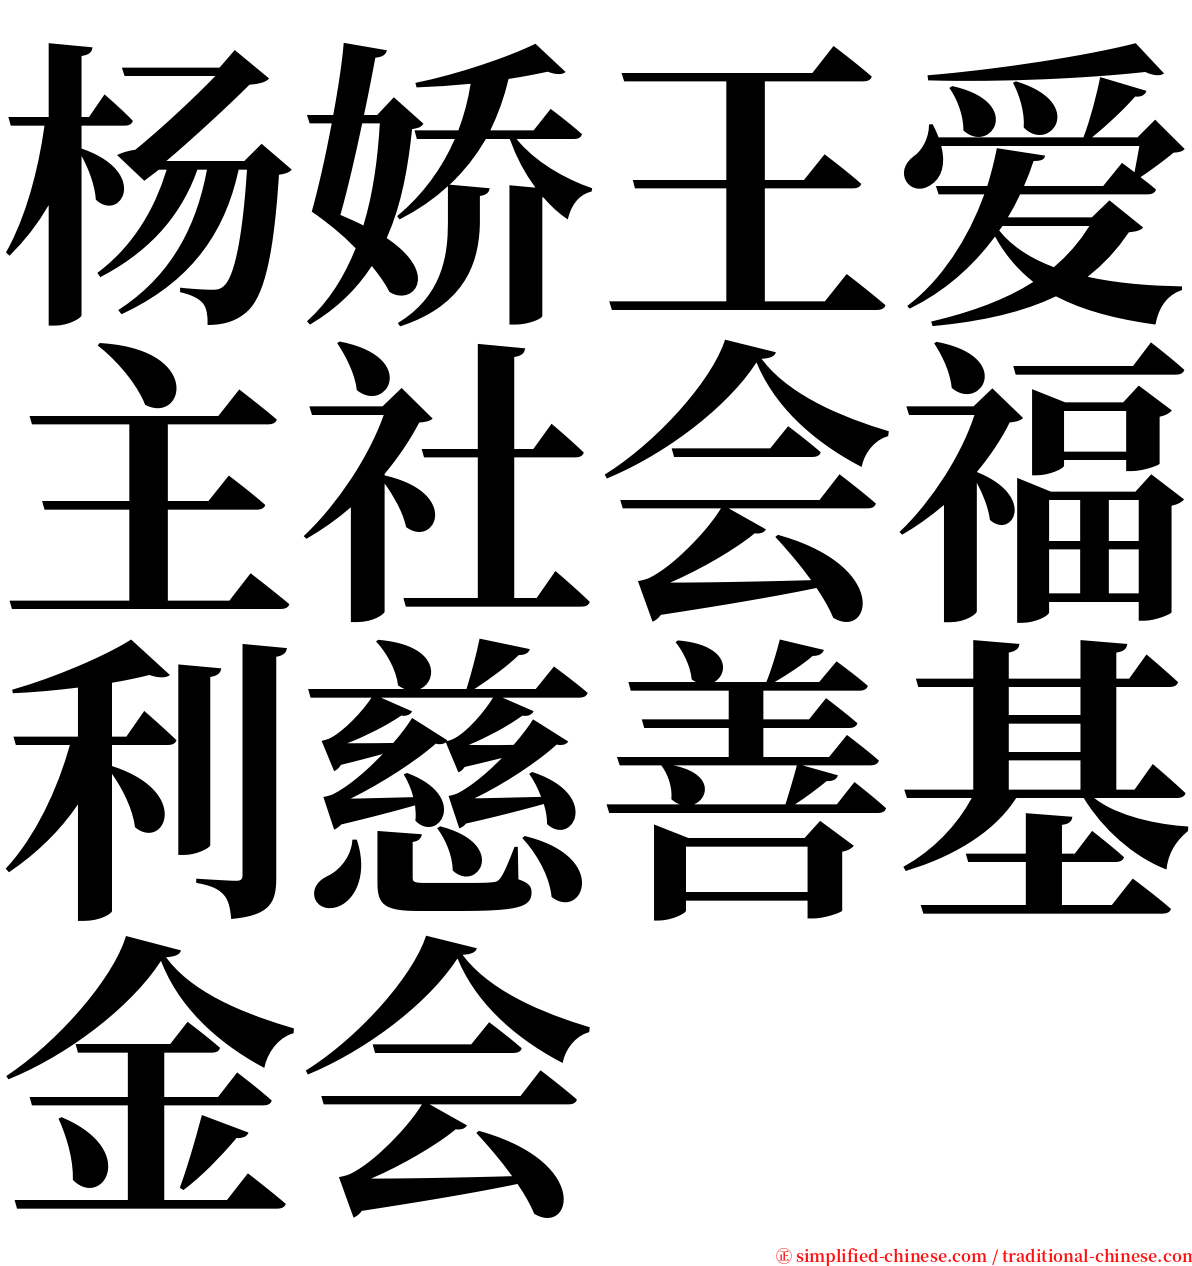 杨娇王爱主社会福利慈善基金会 serif font